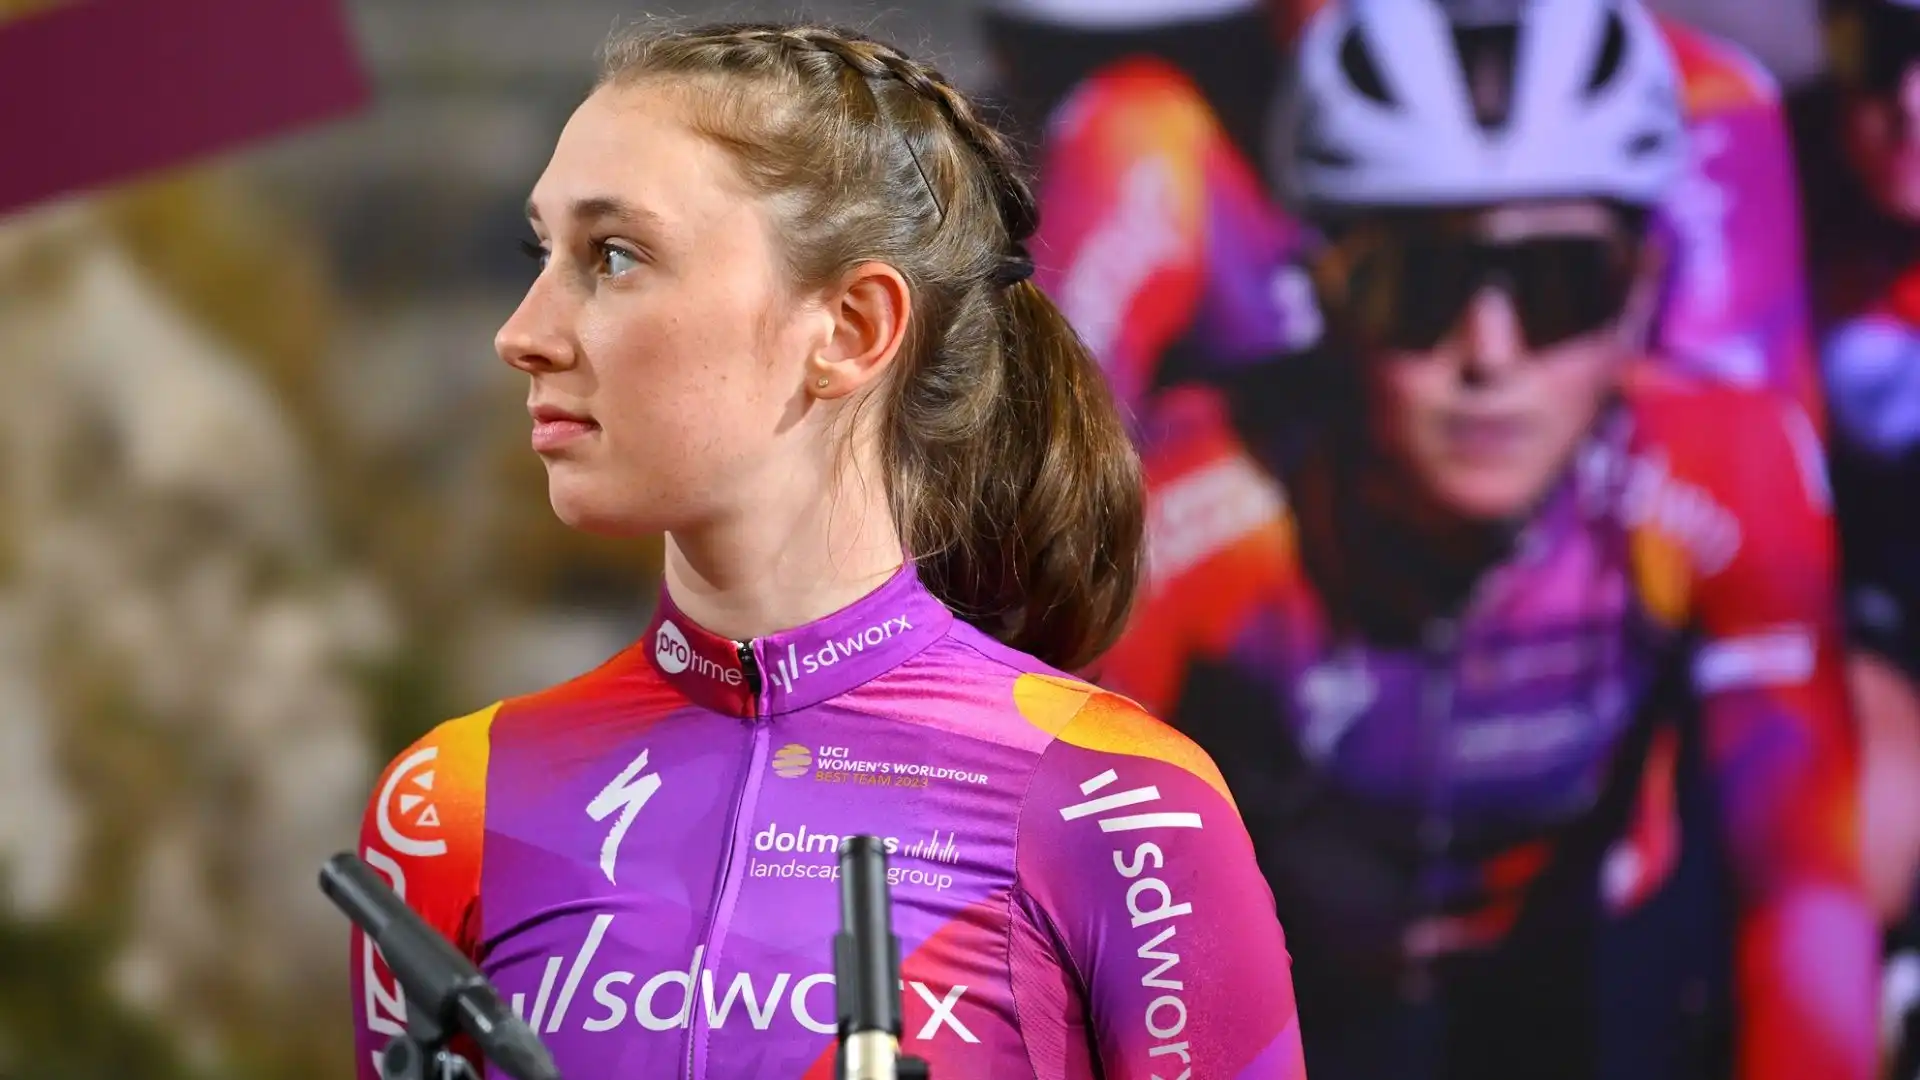 La giovane e talentuosa britannica è stata costretta a ritirarsi dal ciclismo a soli 22 anni